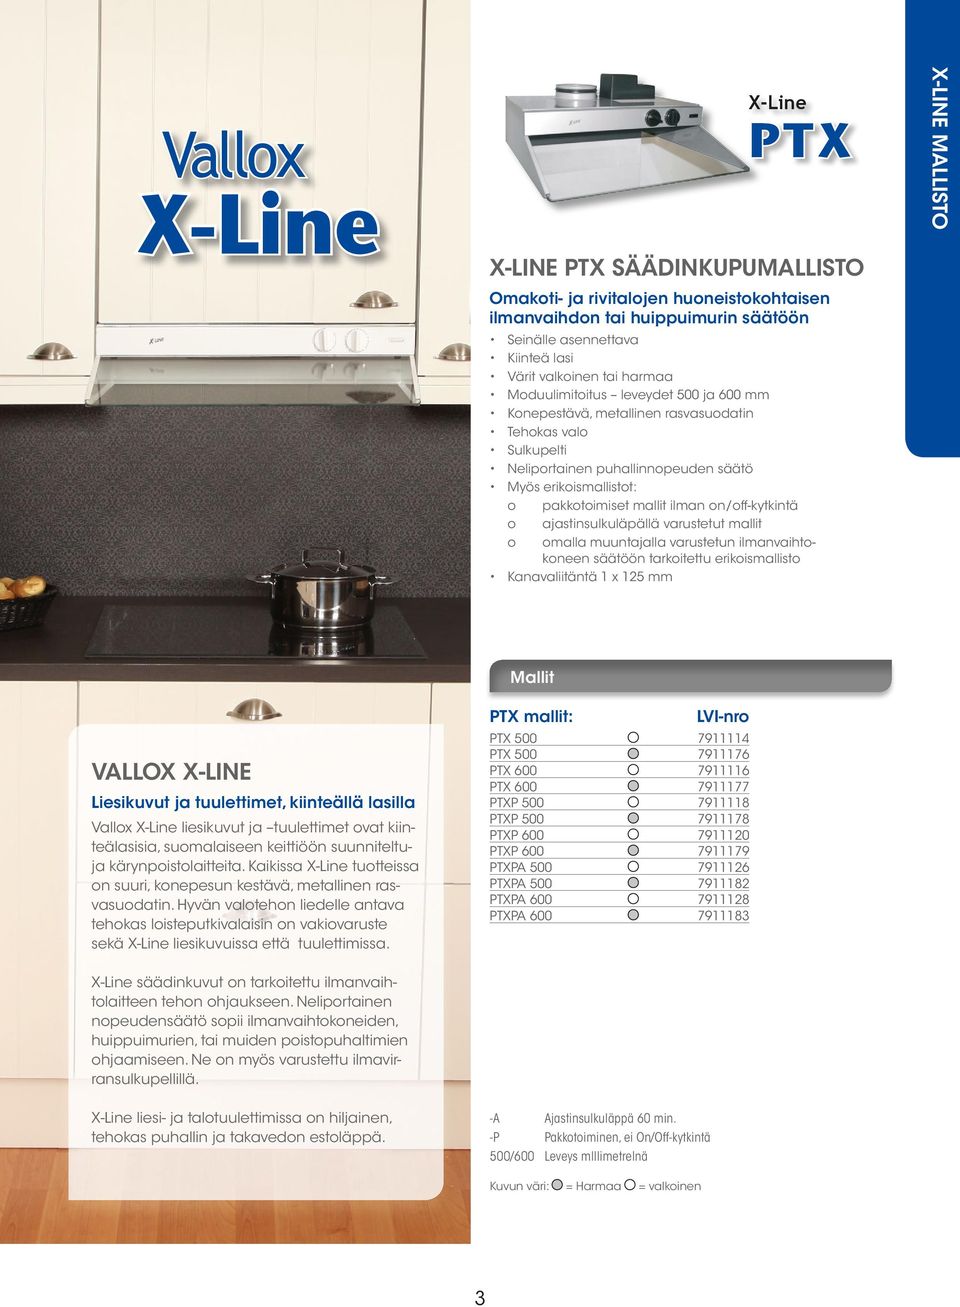 LISÄVARUSTEET VALLOX X-LINE Liesikuvut ja tuulettimet, kiinteällä lasilla Vallox liesikuvut ja tuulettimet ovat kiinteälasisia, suomalaiseen keittiöön suunniteltuja kärynpoistolaitteita.